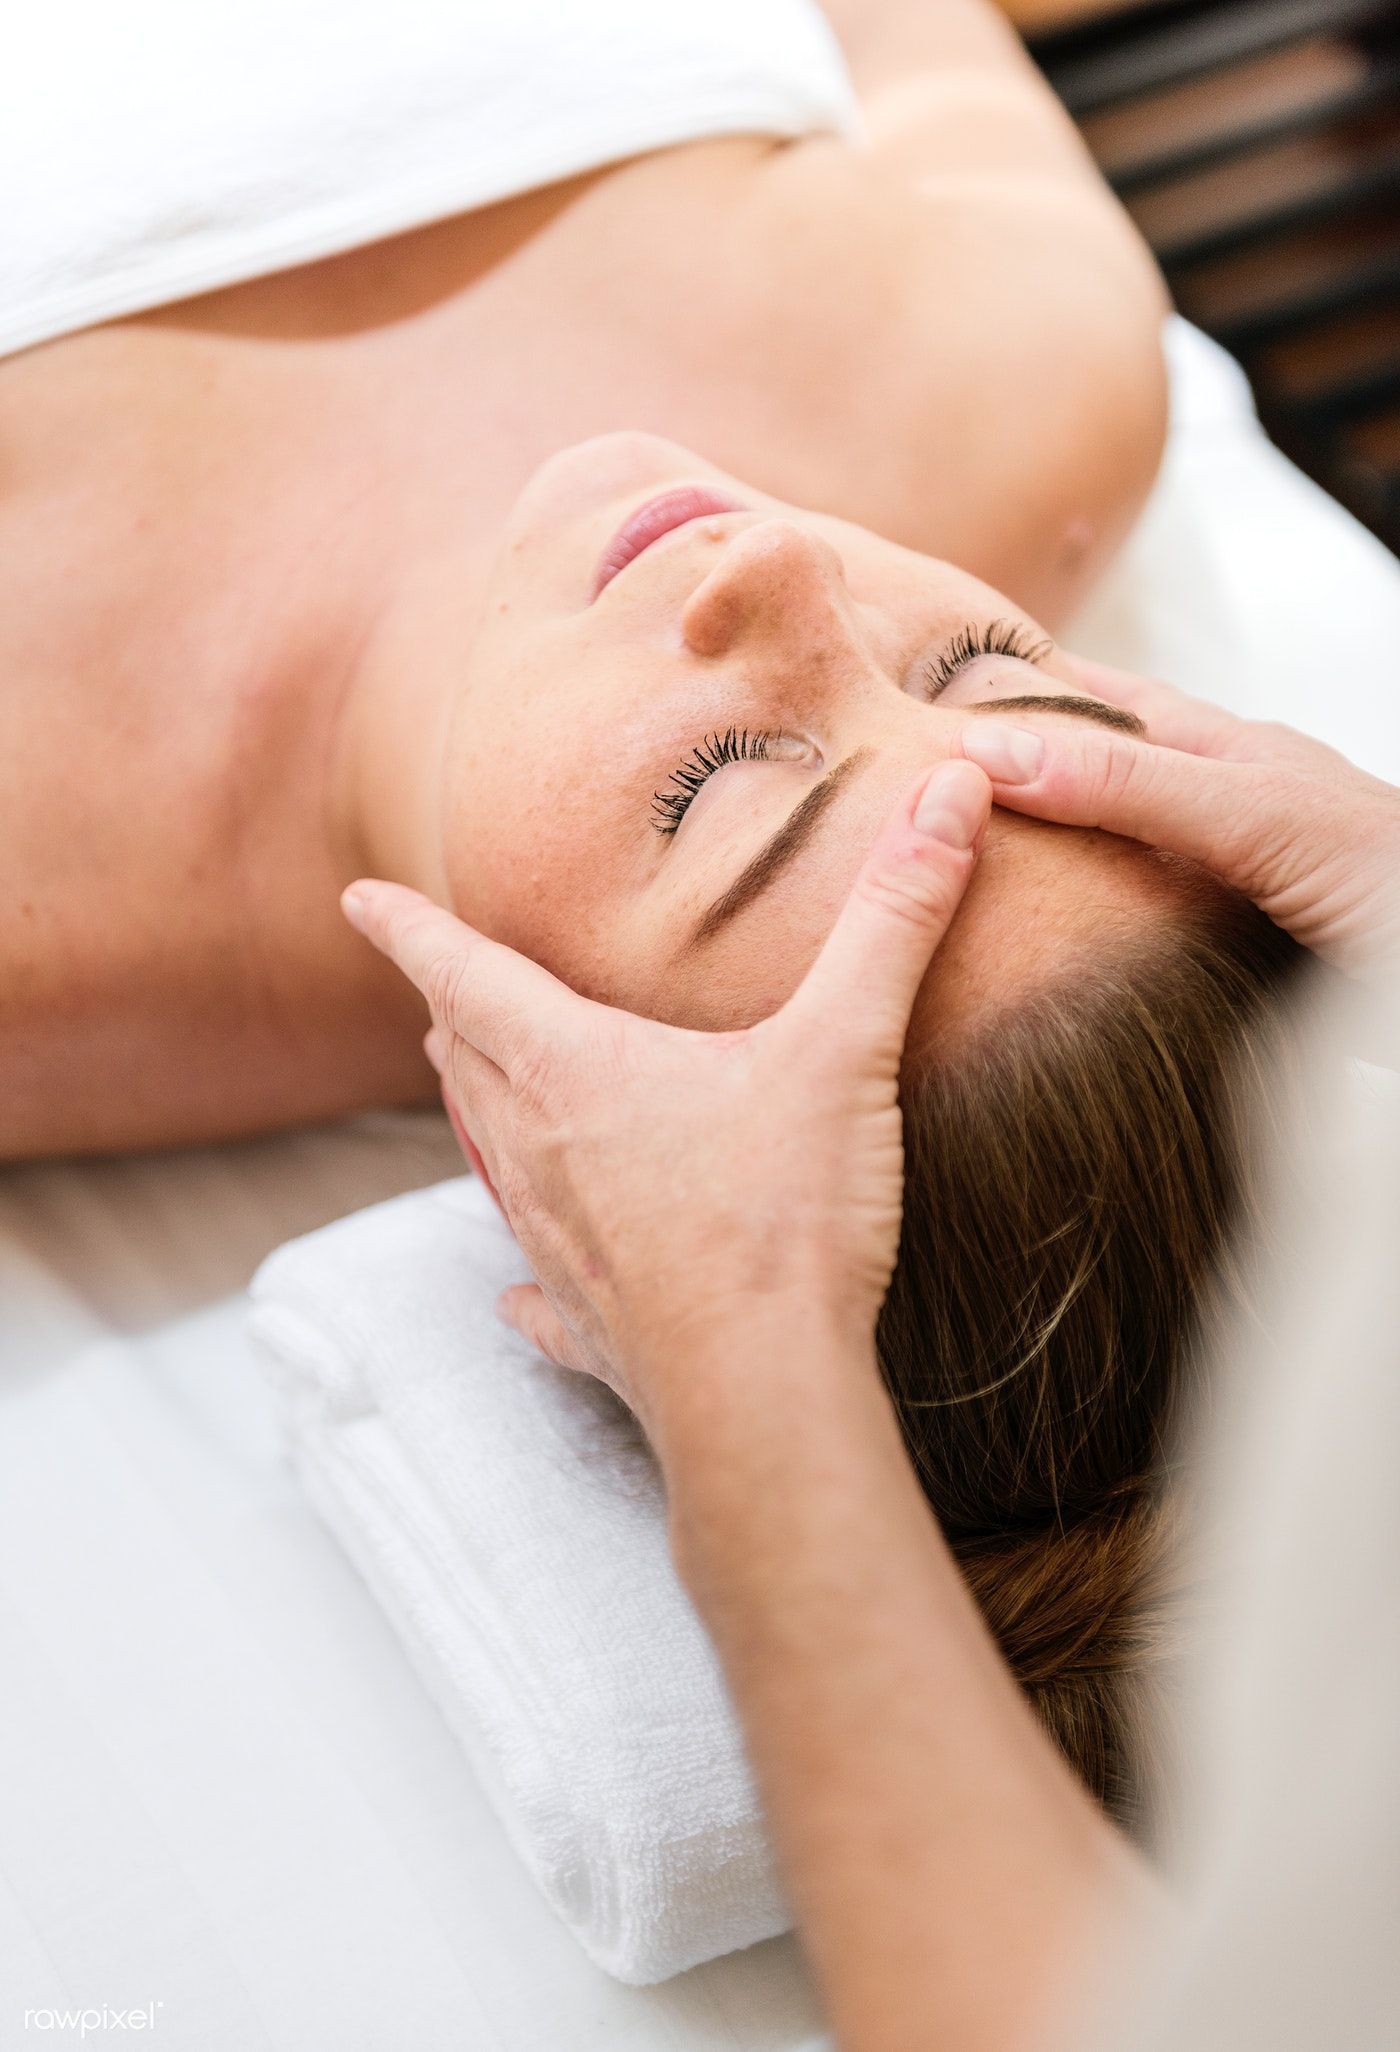 Download premium photo of Spa salon therapy treatment 259425 - Download premium photo of Spa salon therapy treatment 259425 -   14 beauty Treatments facial ideas